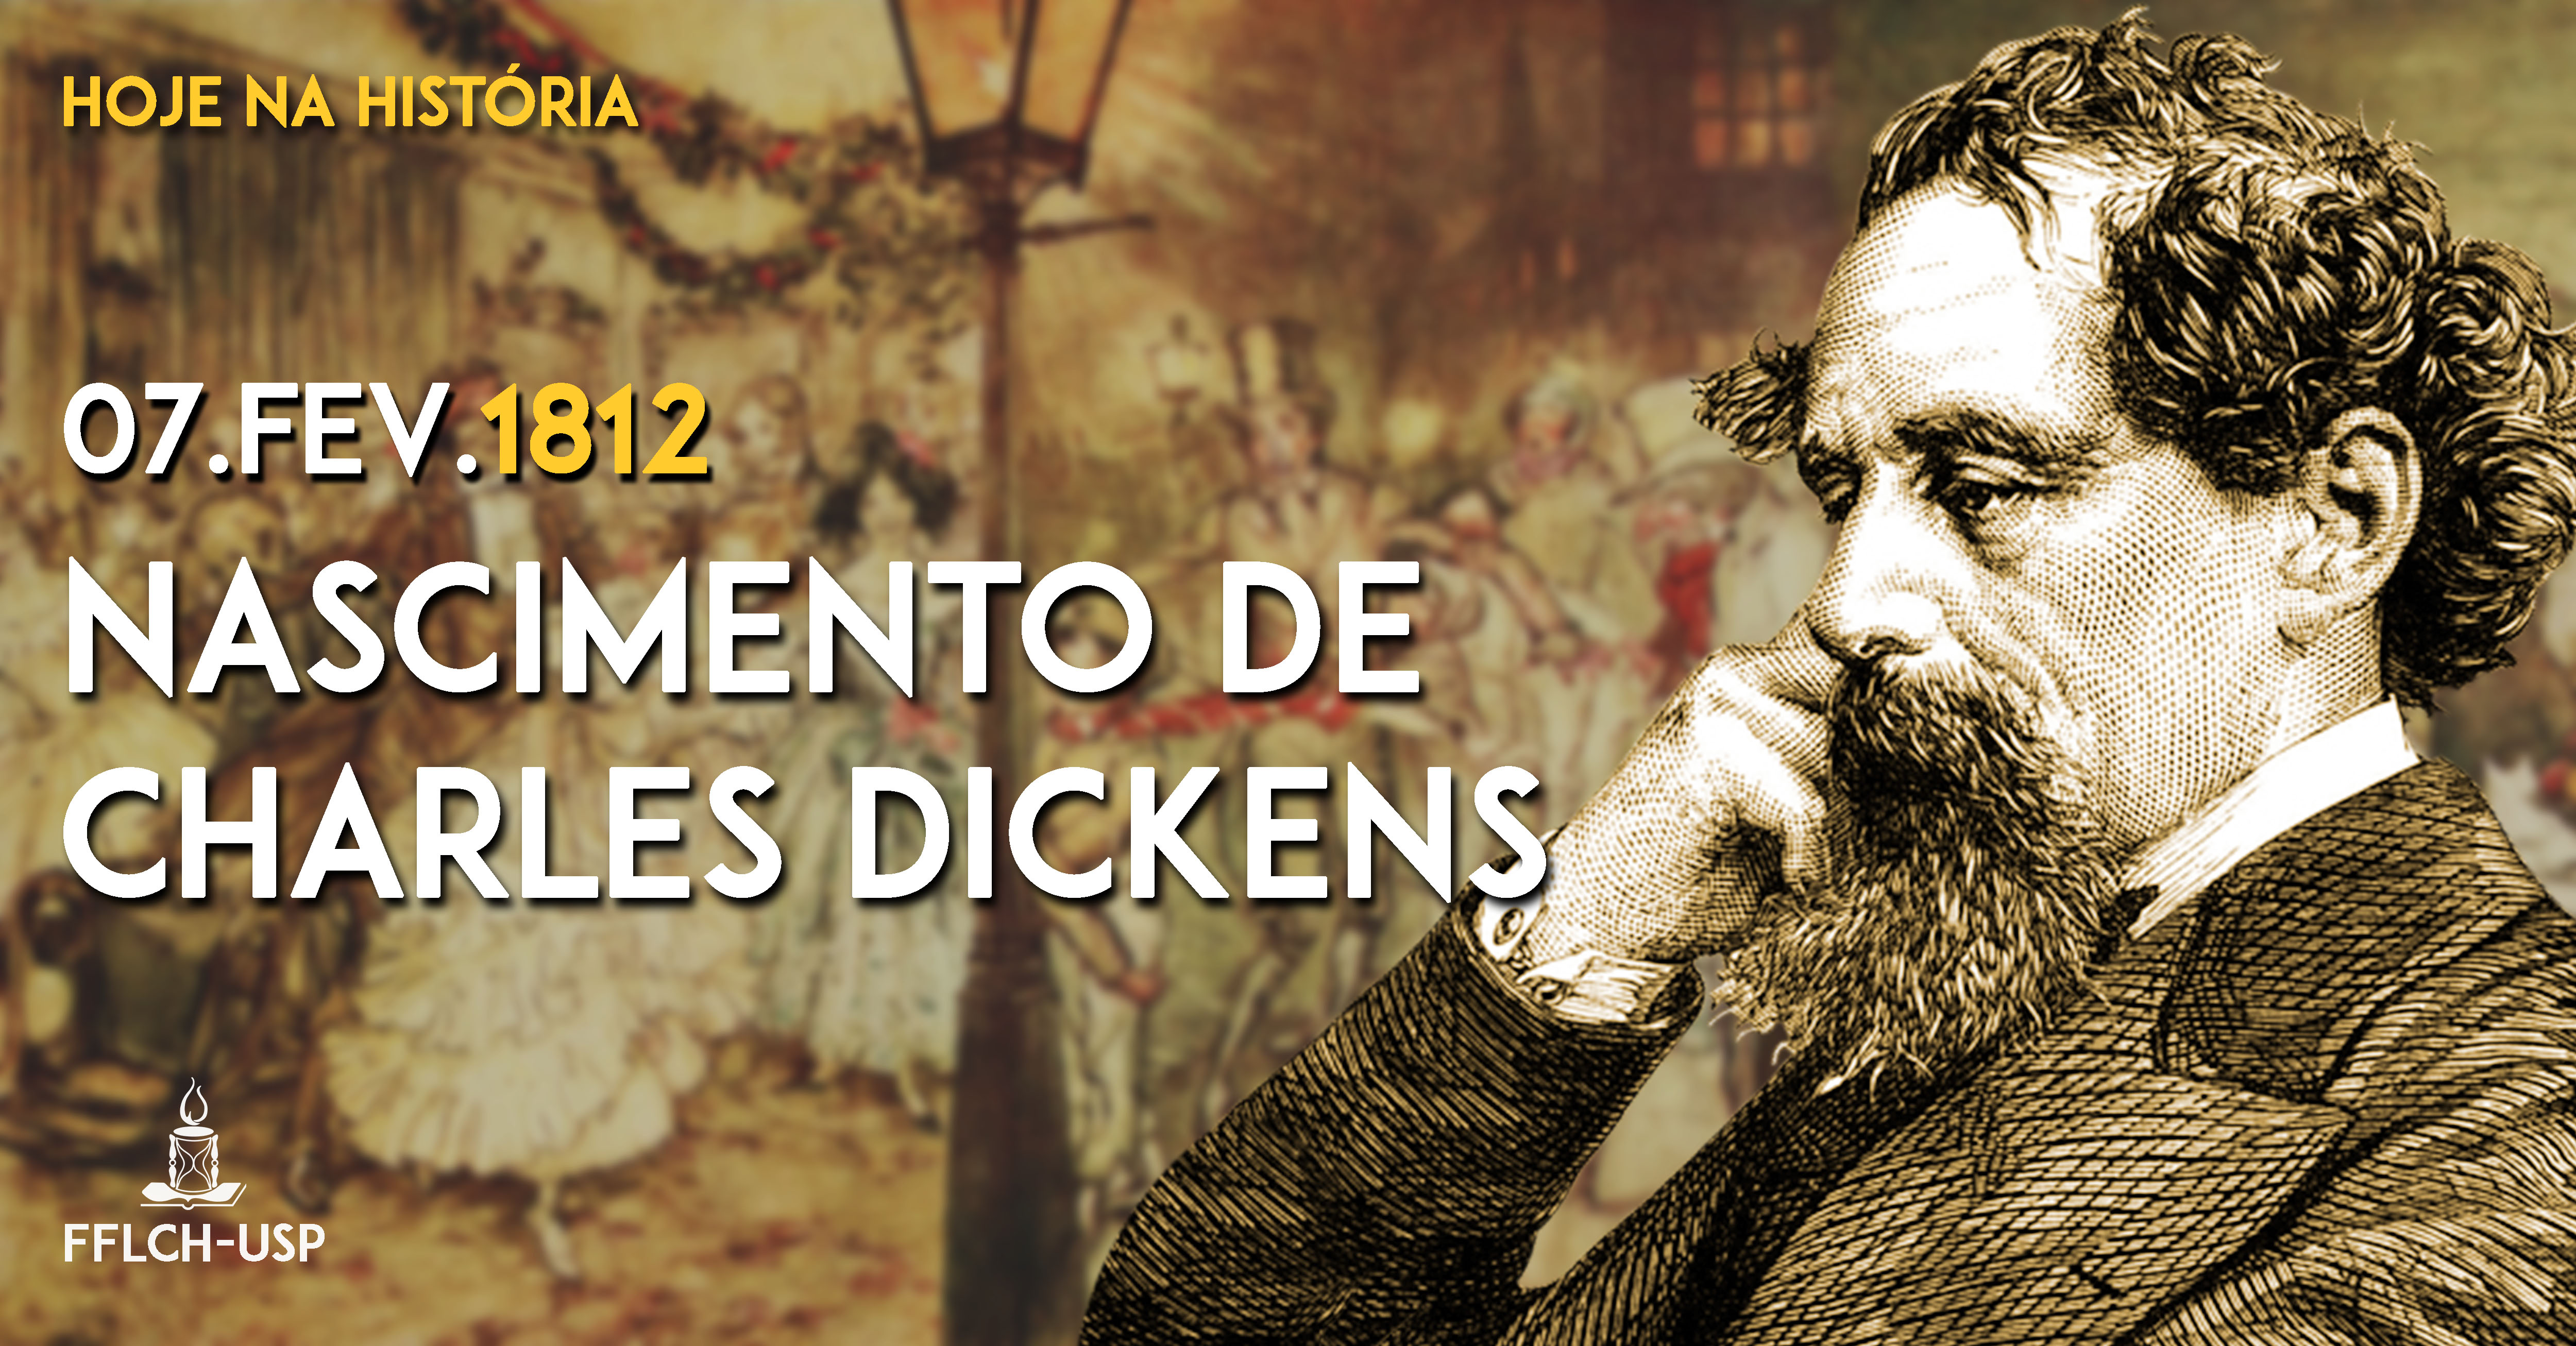 07.02.1812: Nascimento de Charles Dickens